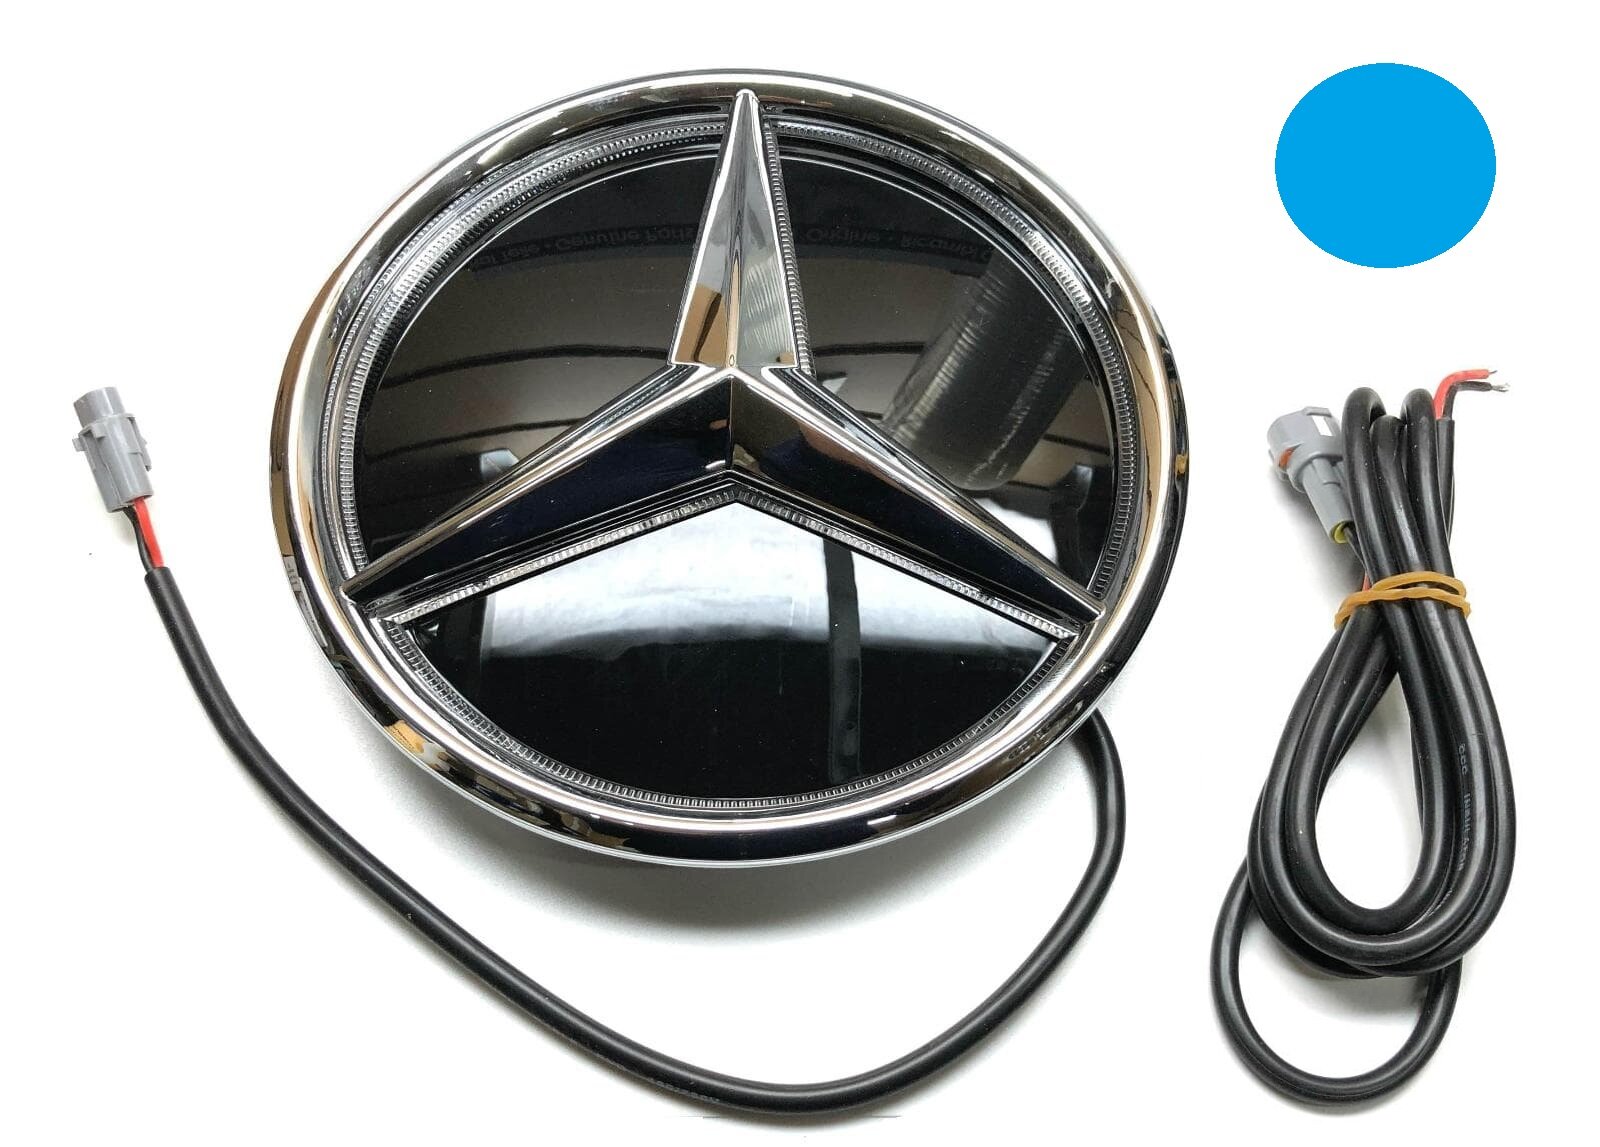 Звезда на решетку радиатора Mercedes хром 205 с подсветкой (синий цвет)